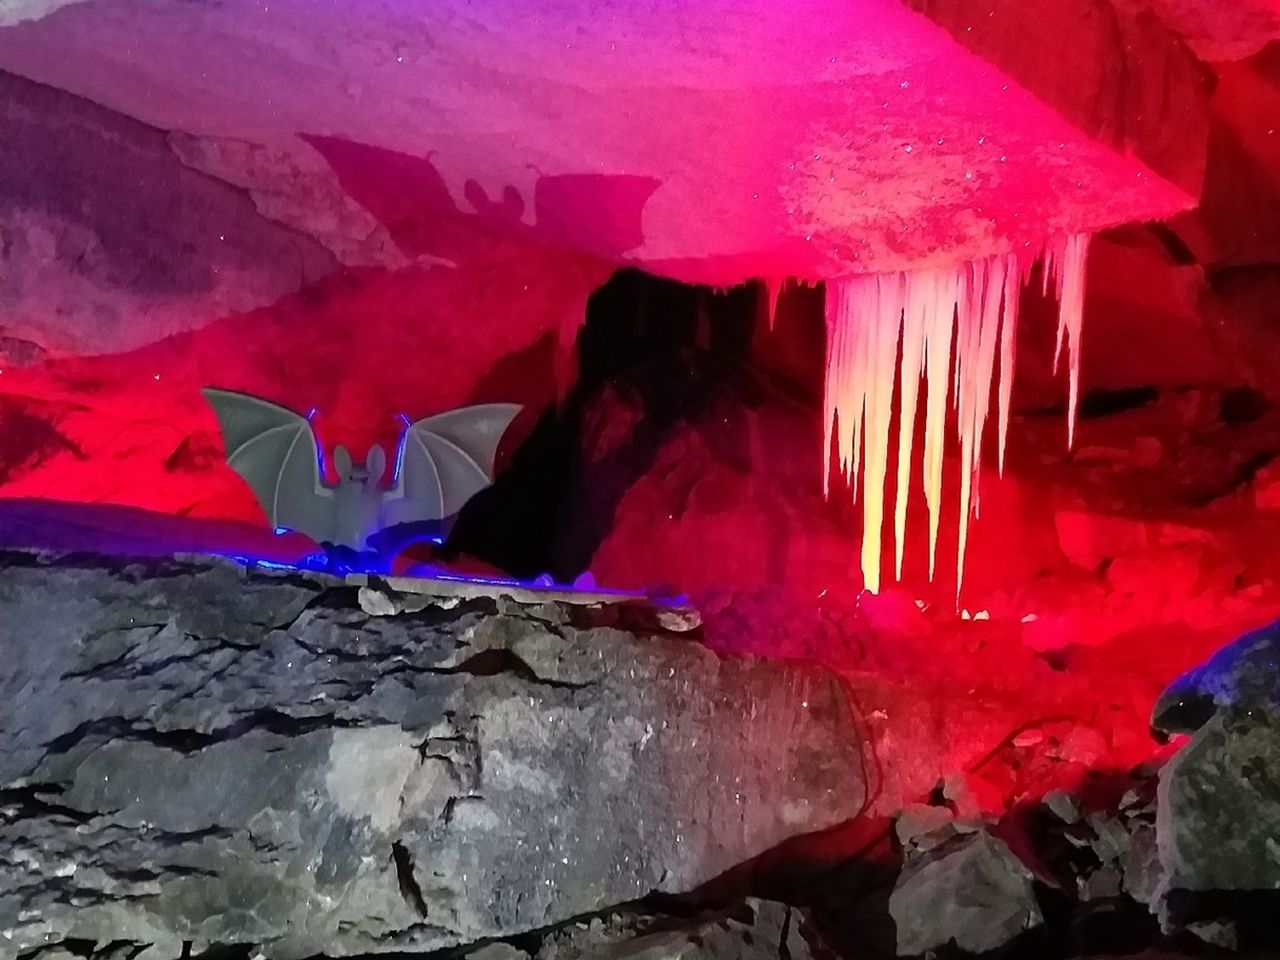 Кунгурская ледяная пещера и город Кунгур | Цена 12500₽, отзывы, описание экскурсии